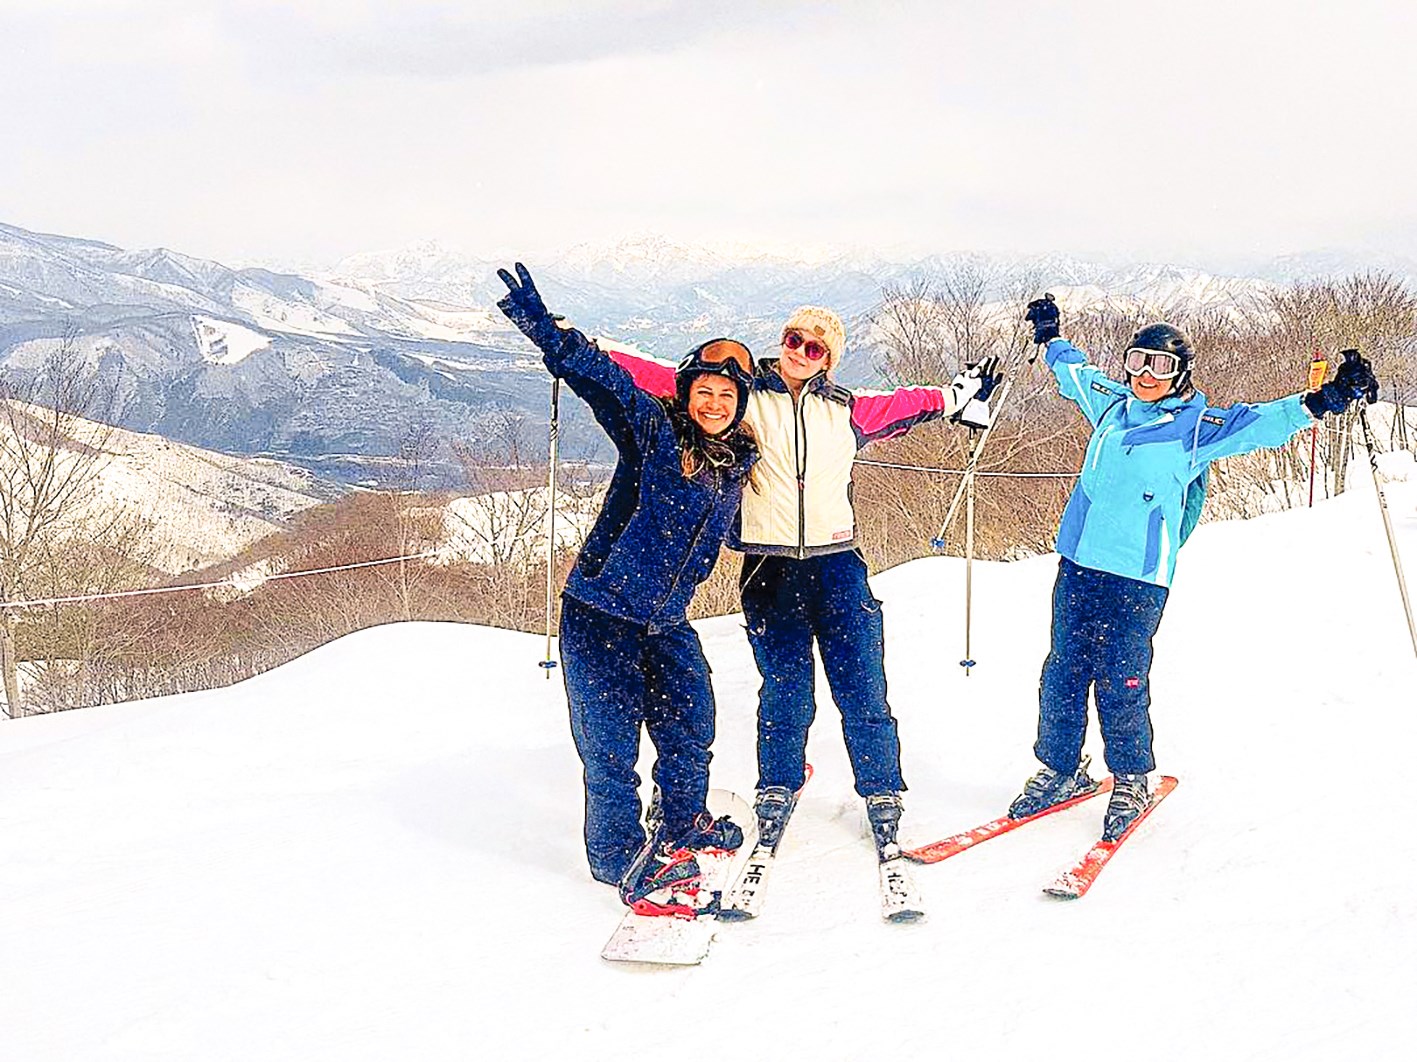 Japan Winter Wonder plus 4 Day Ski Package Trip